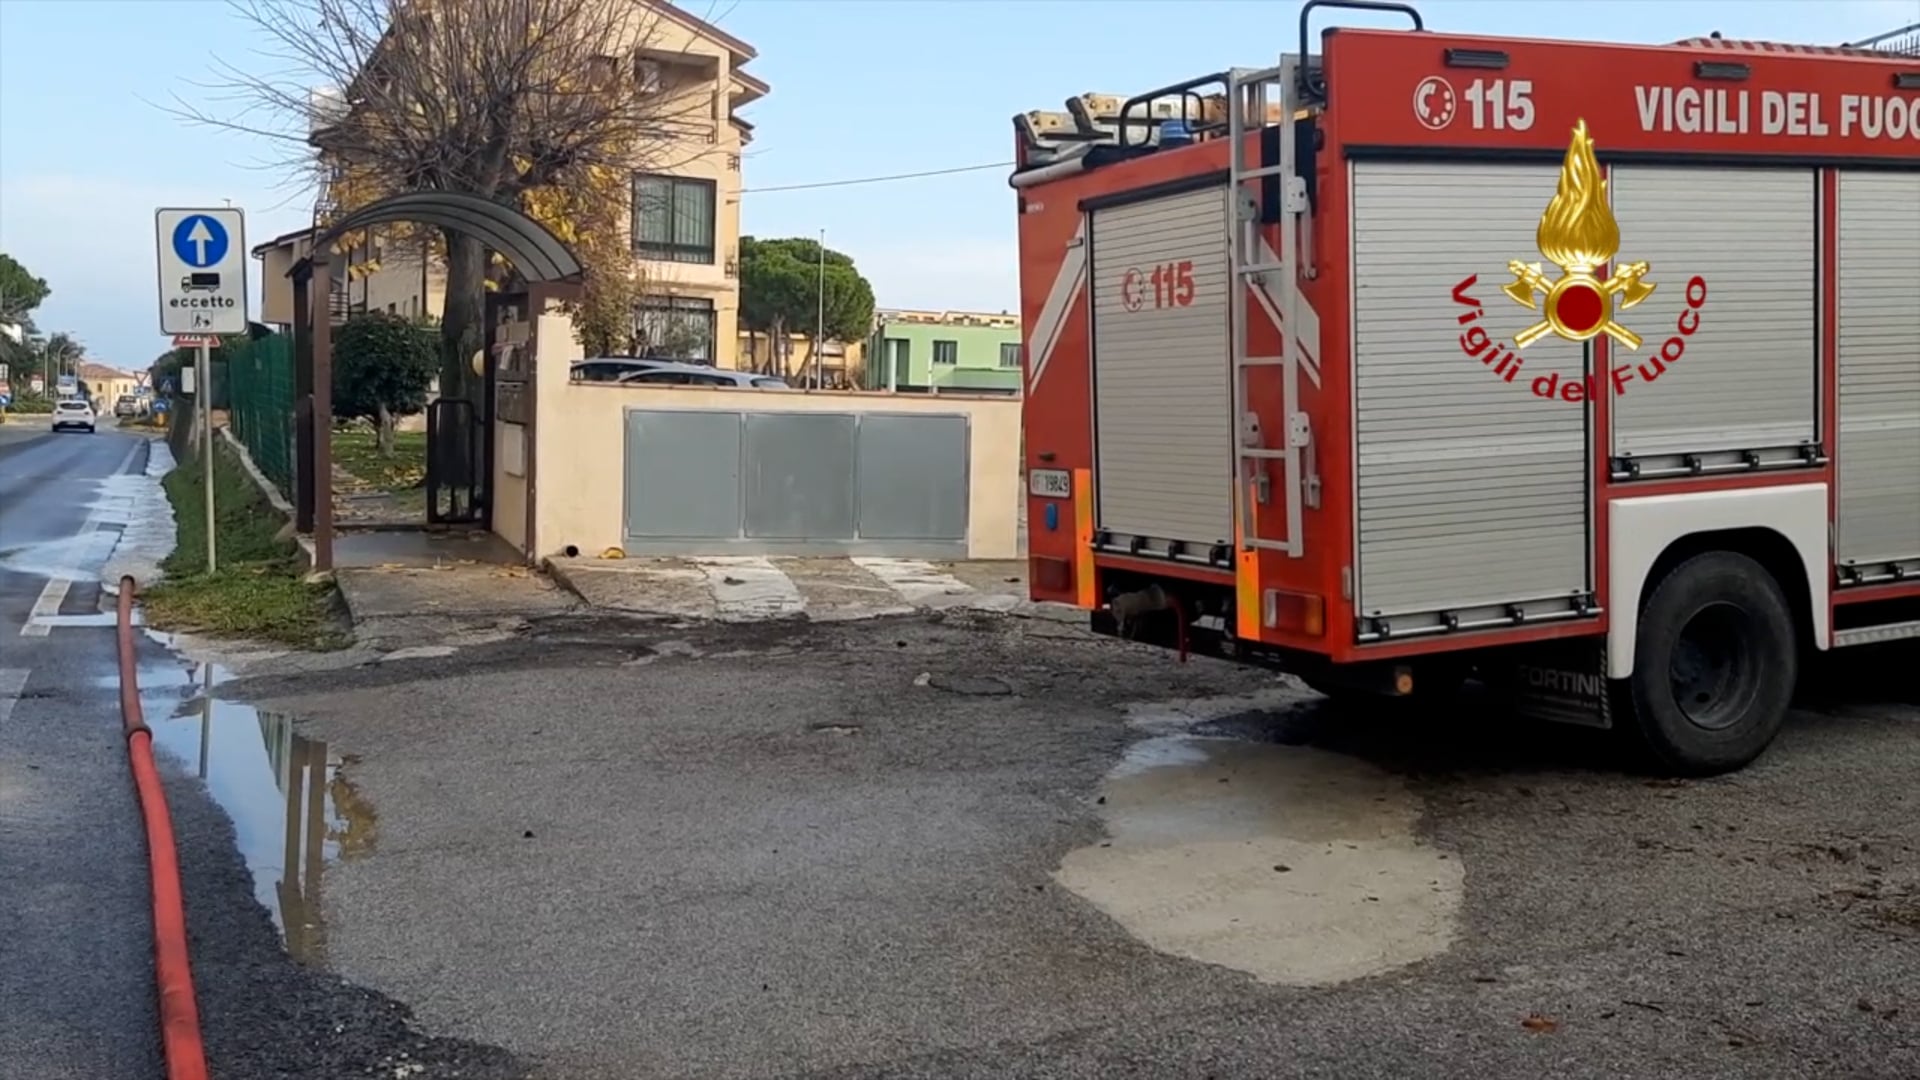 Maltempo: la più colpita è la provincia di Pesaro Urbino. A Fano 4 persone evacuate da casa - VIDEO